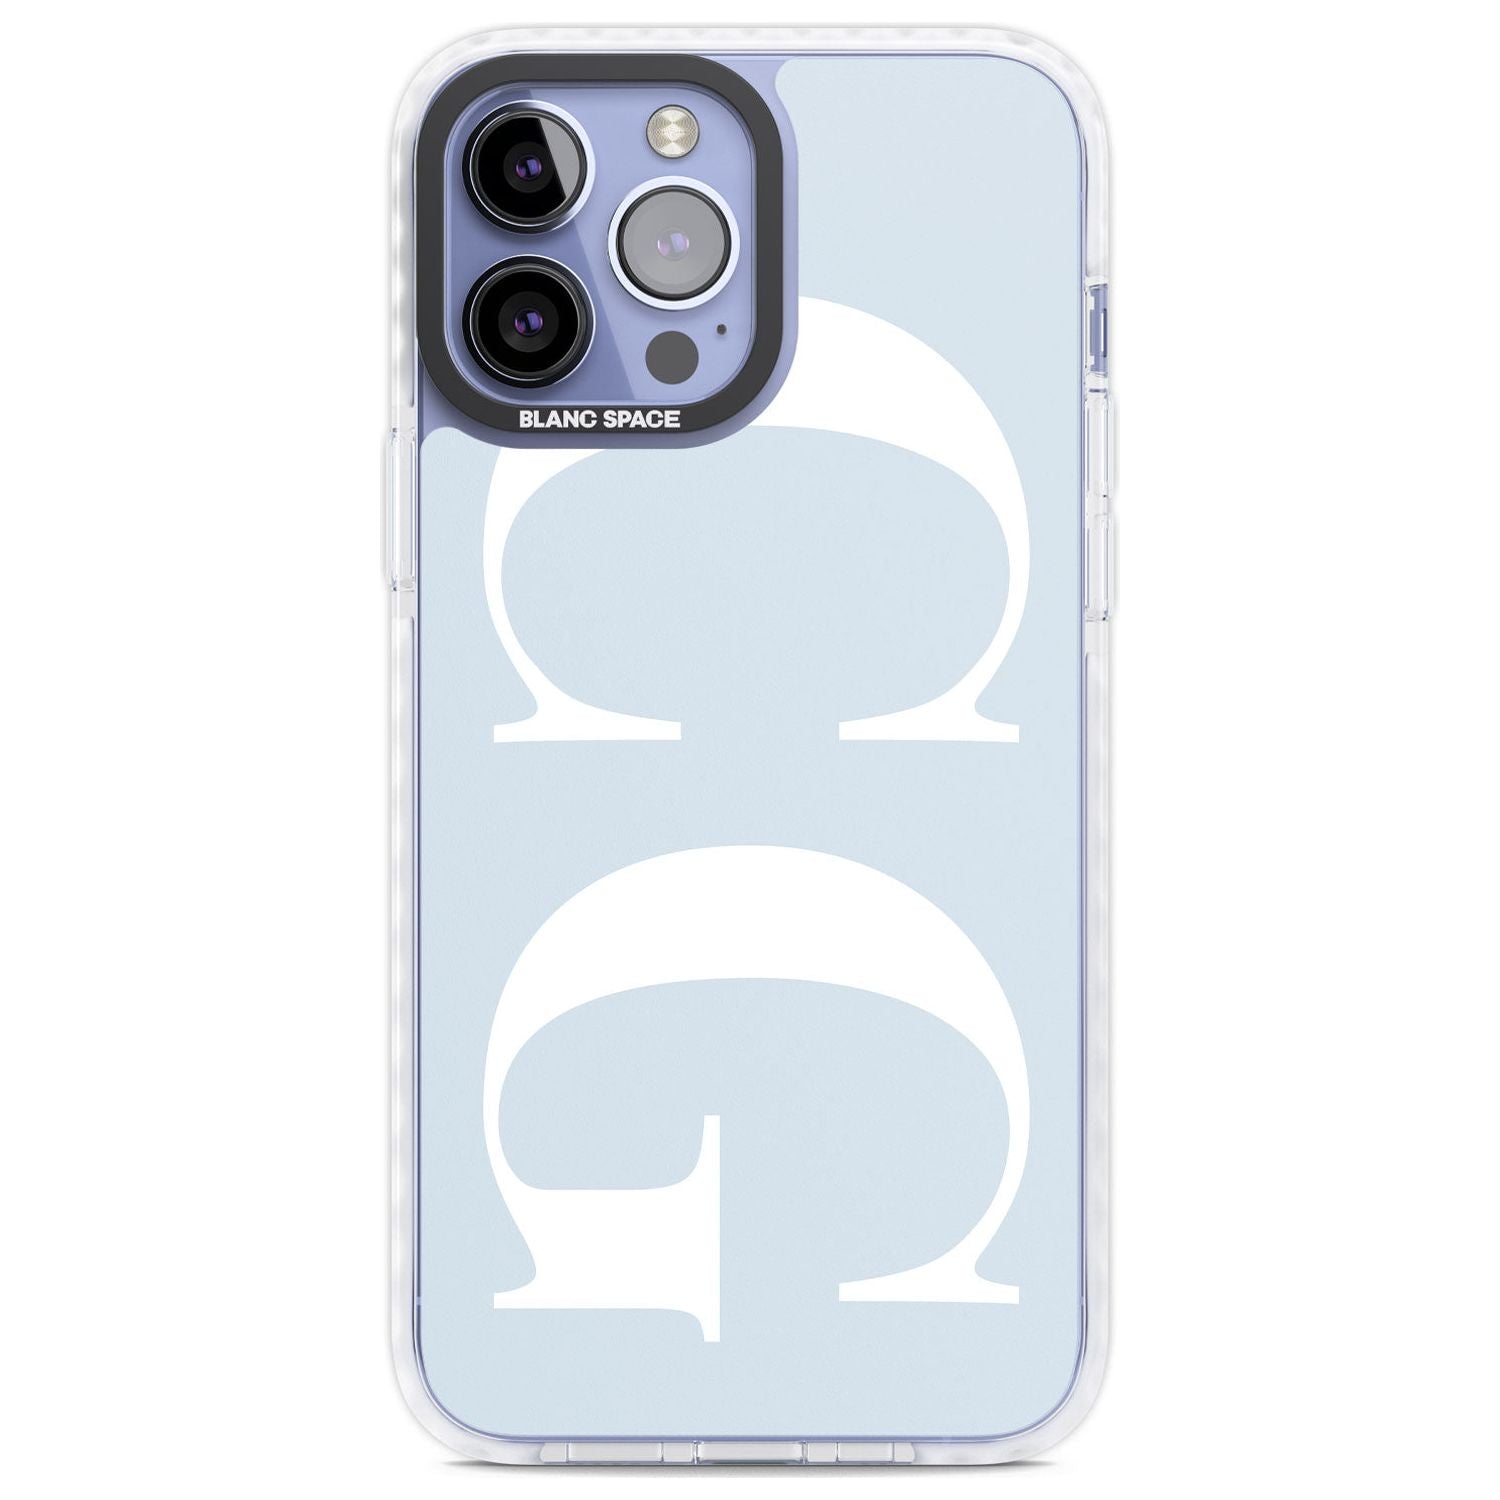 Almond Latte - Cute iPhone 12 Mini Case